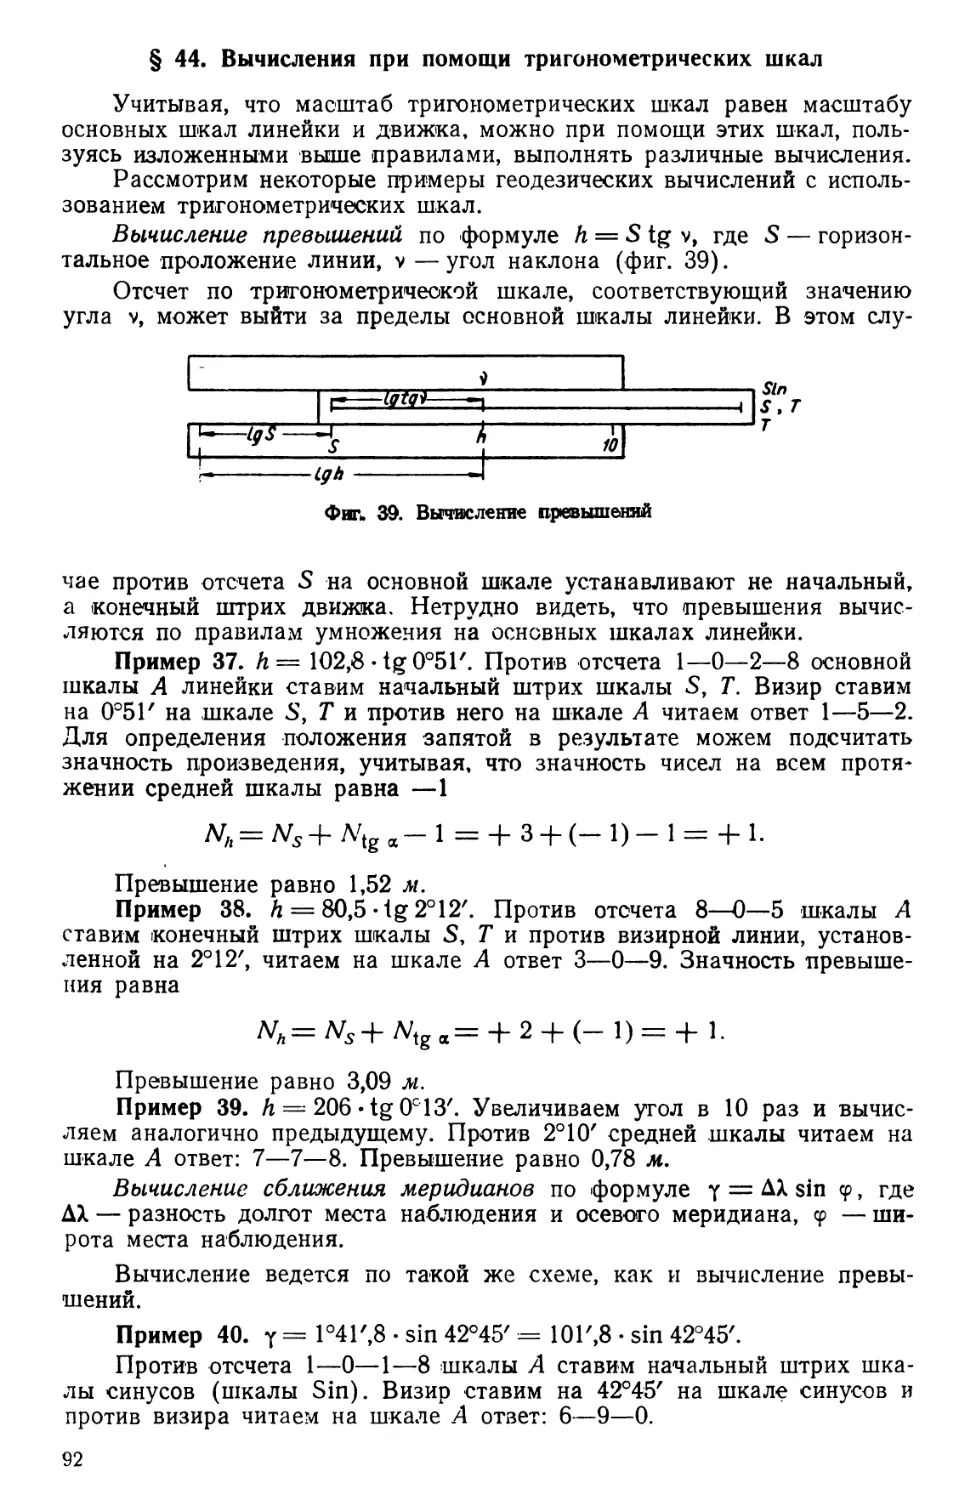 § 44. Вычисления при помощи тригонометрических шкал
§ 45. Вычисления на основе пропорции